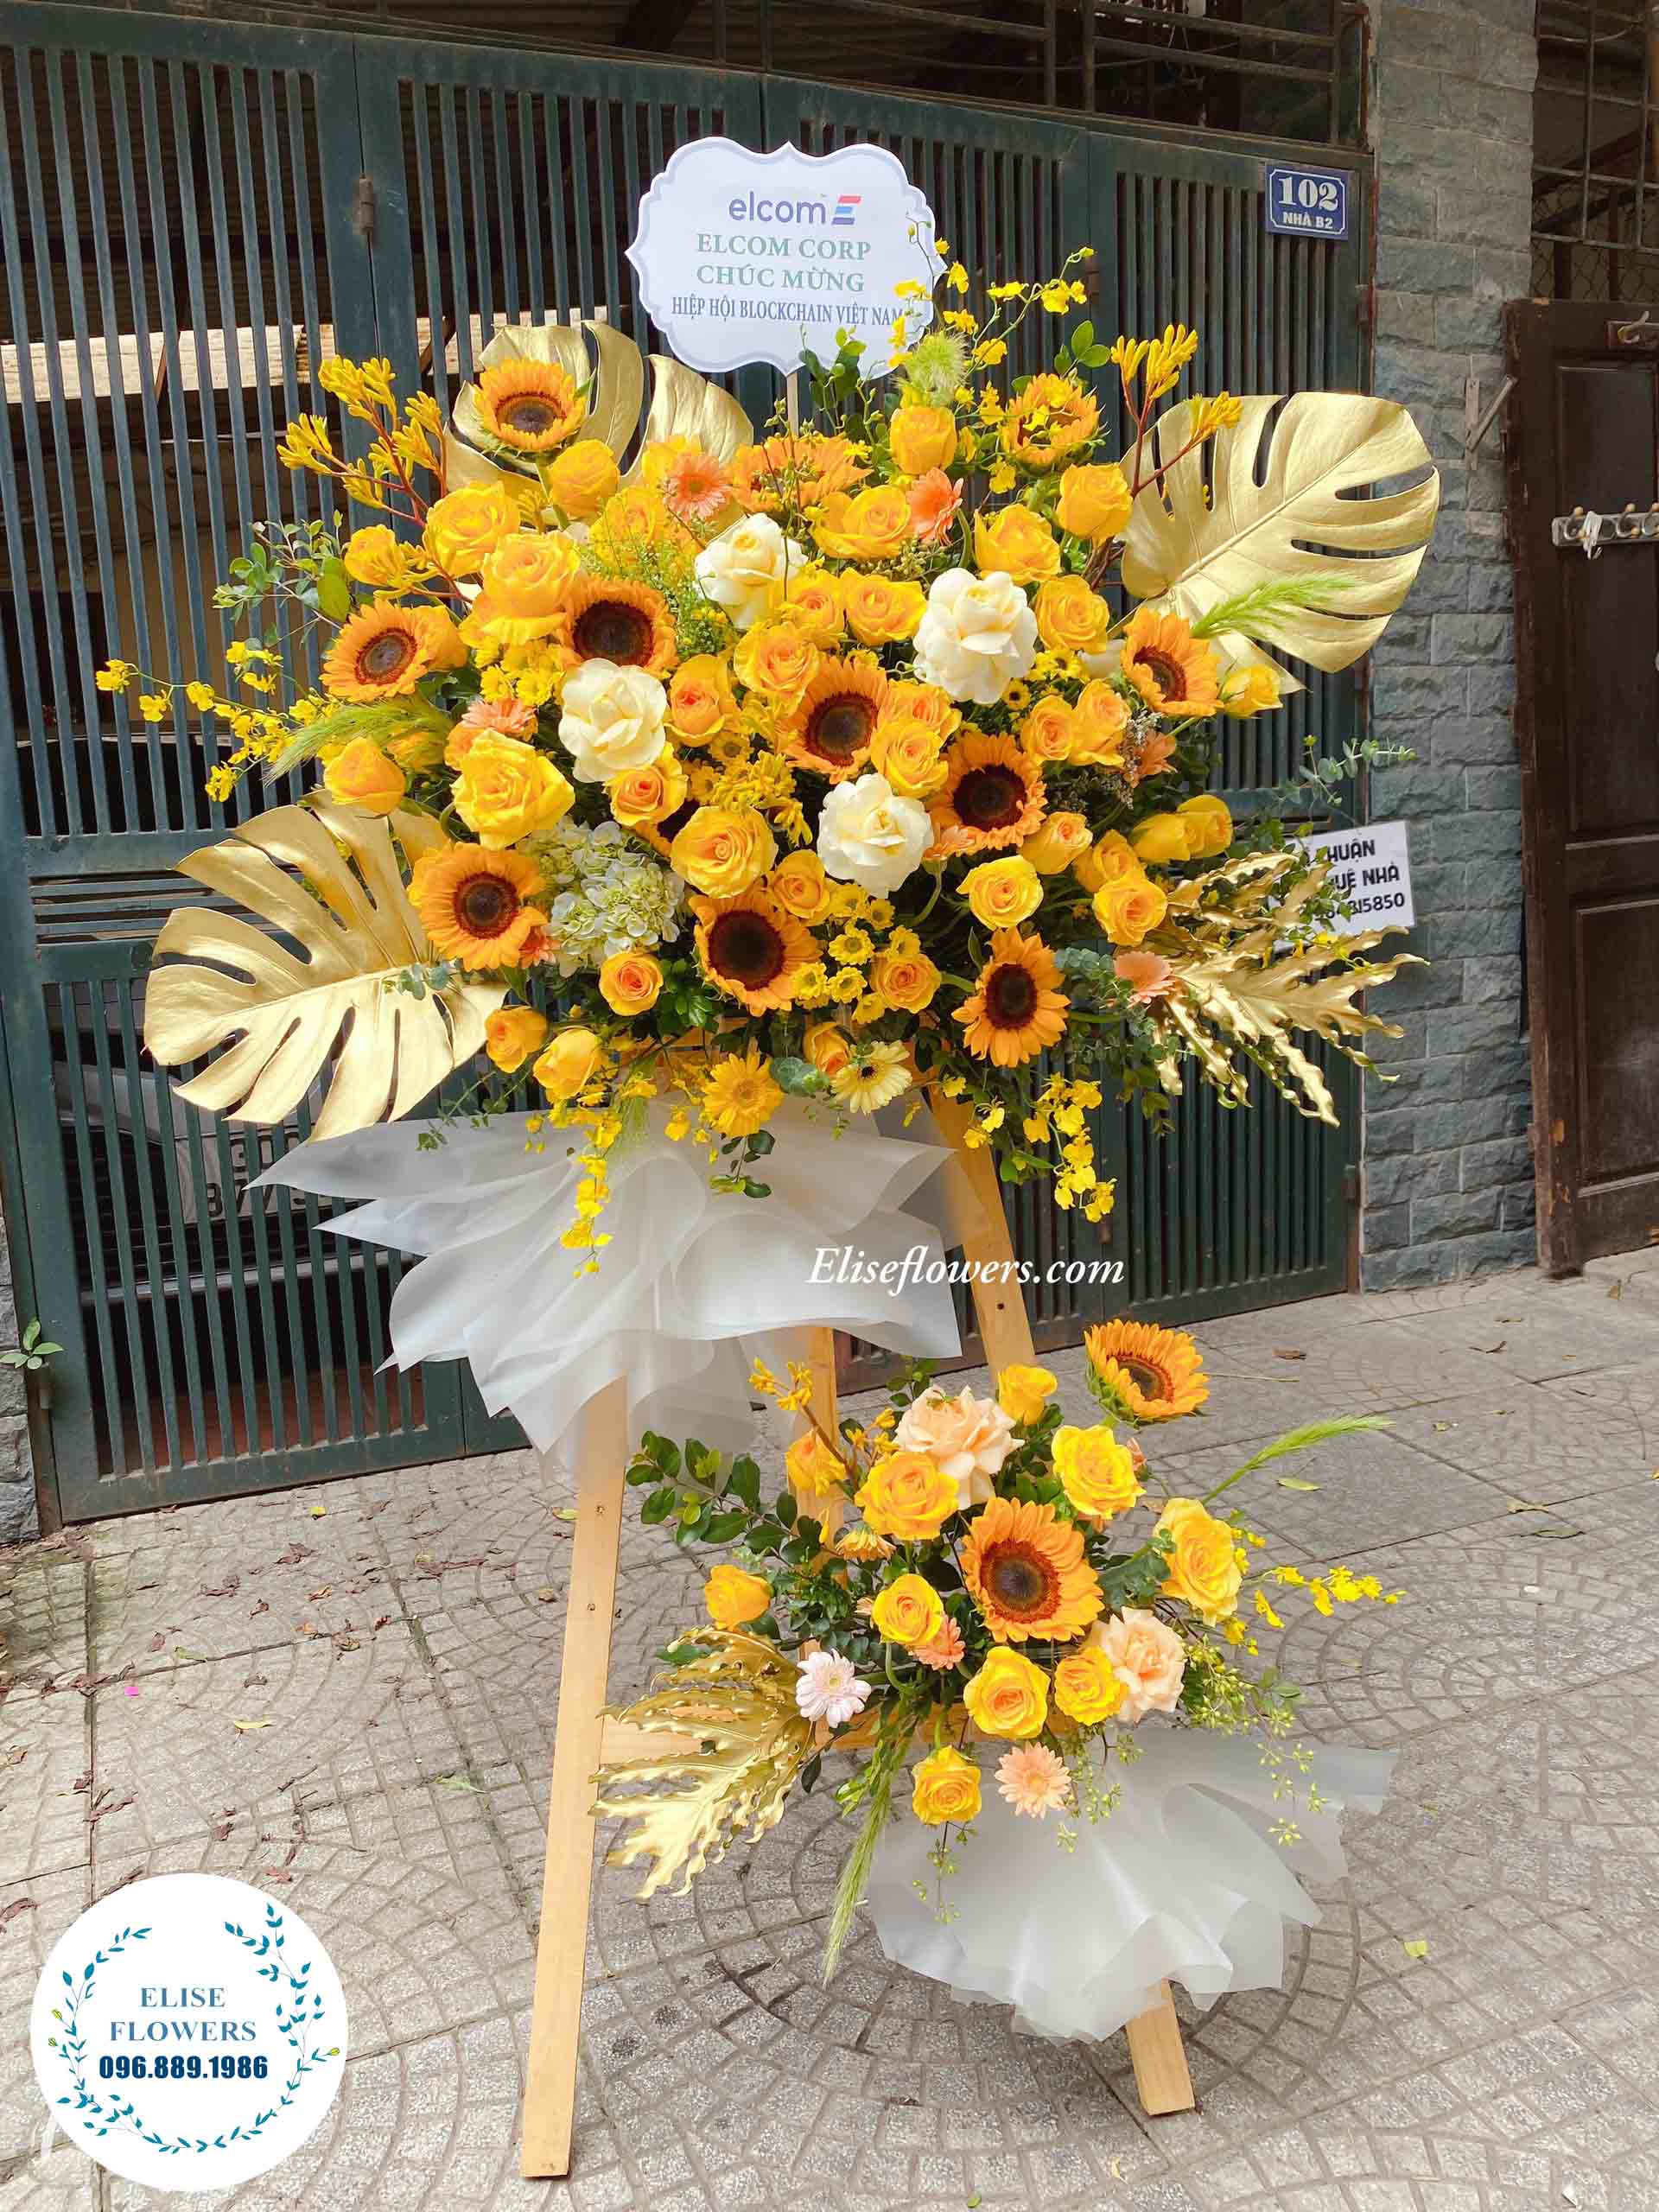 lẵng hoa 2 tầng chúc mừng sinh nhật sếp - lẵng hoa tặng sinh nhật sếp màu vàng - lẵng hoa màu vàng đẹp